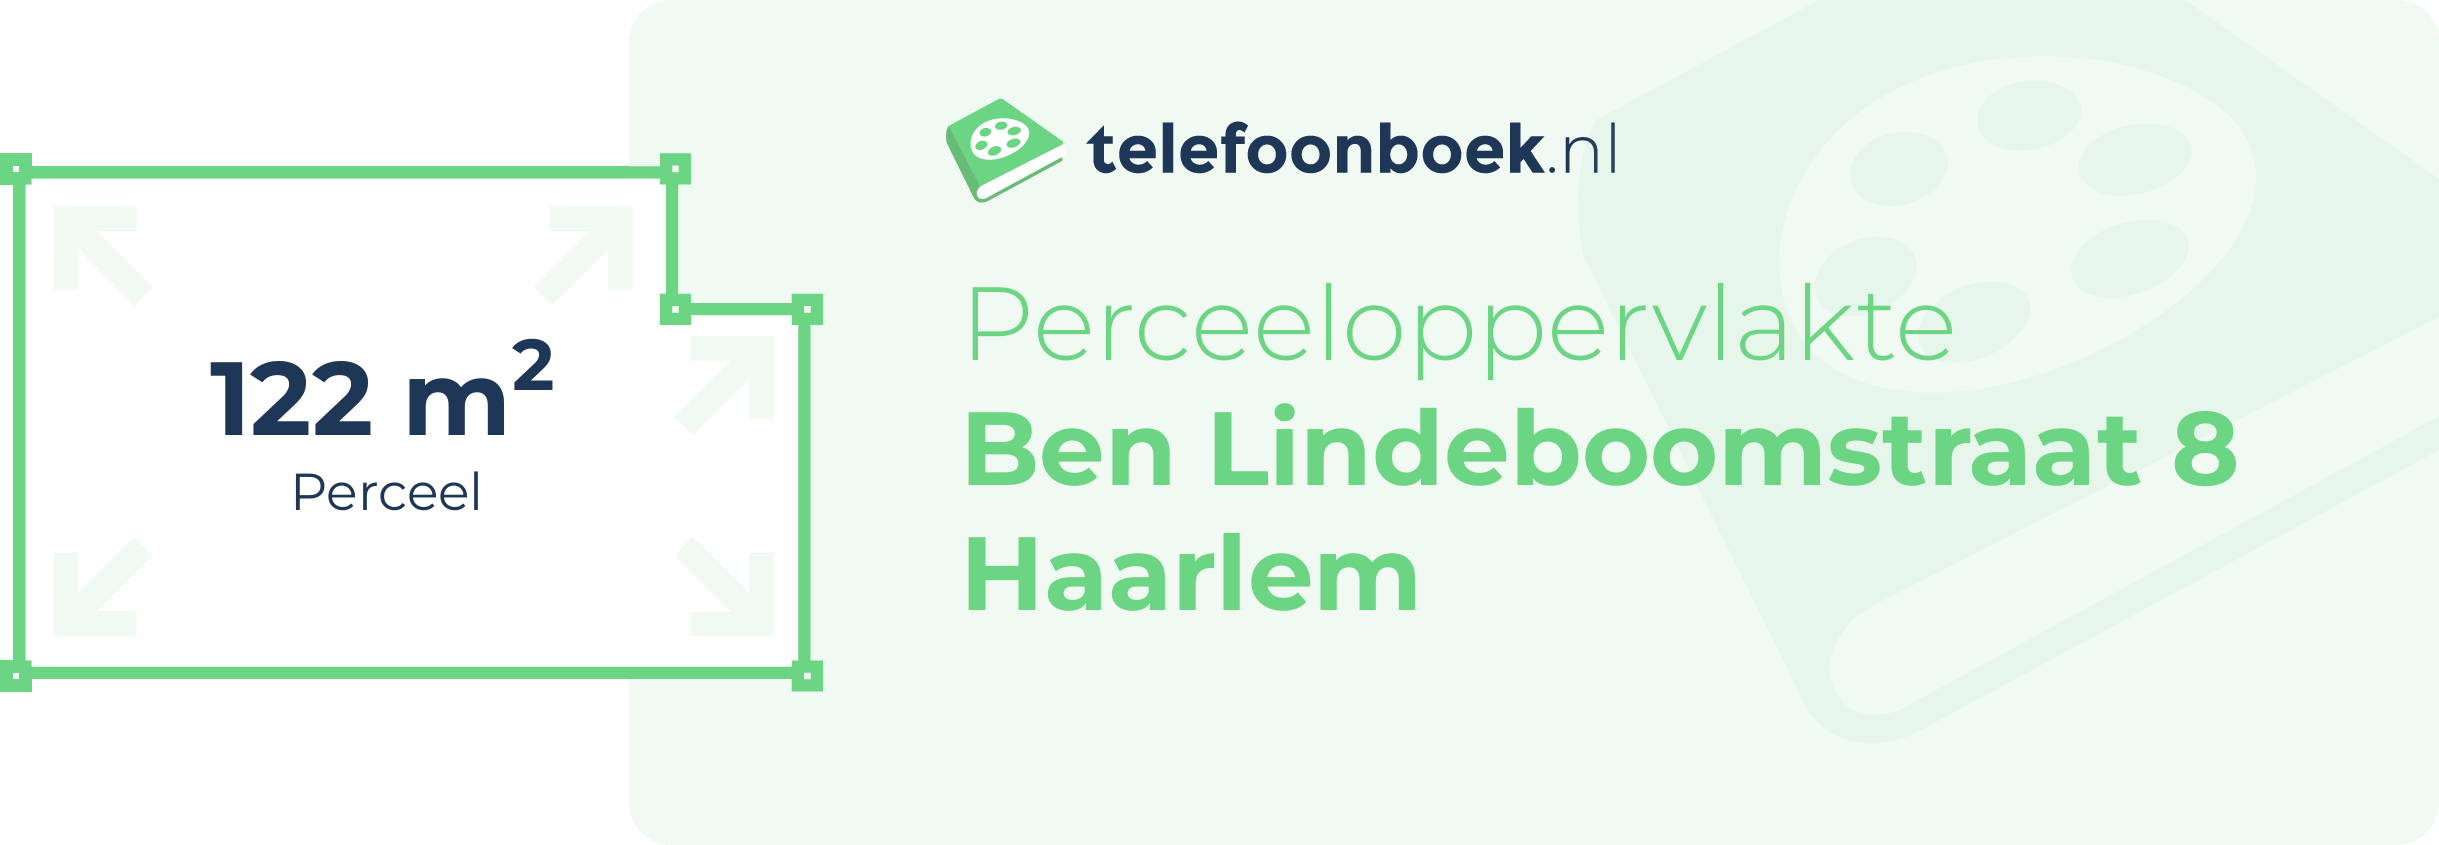 Perceeloppervlakte Ben Lindeboomstraat 8 Haarlem